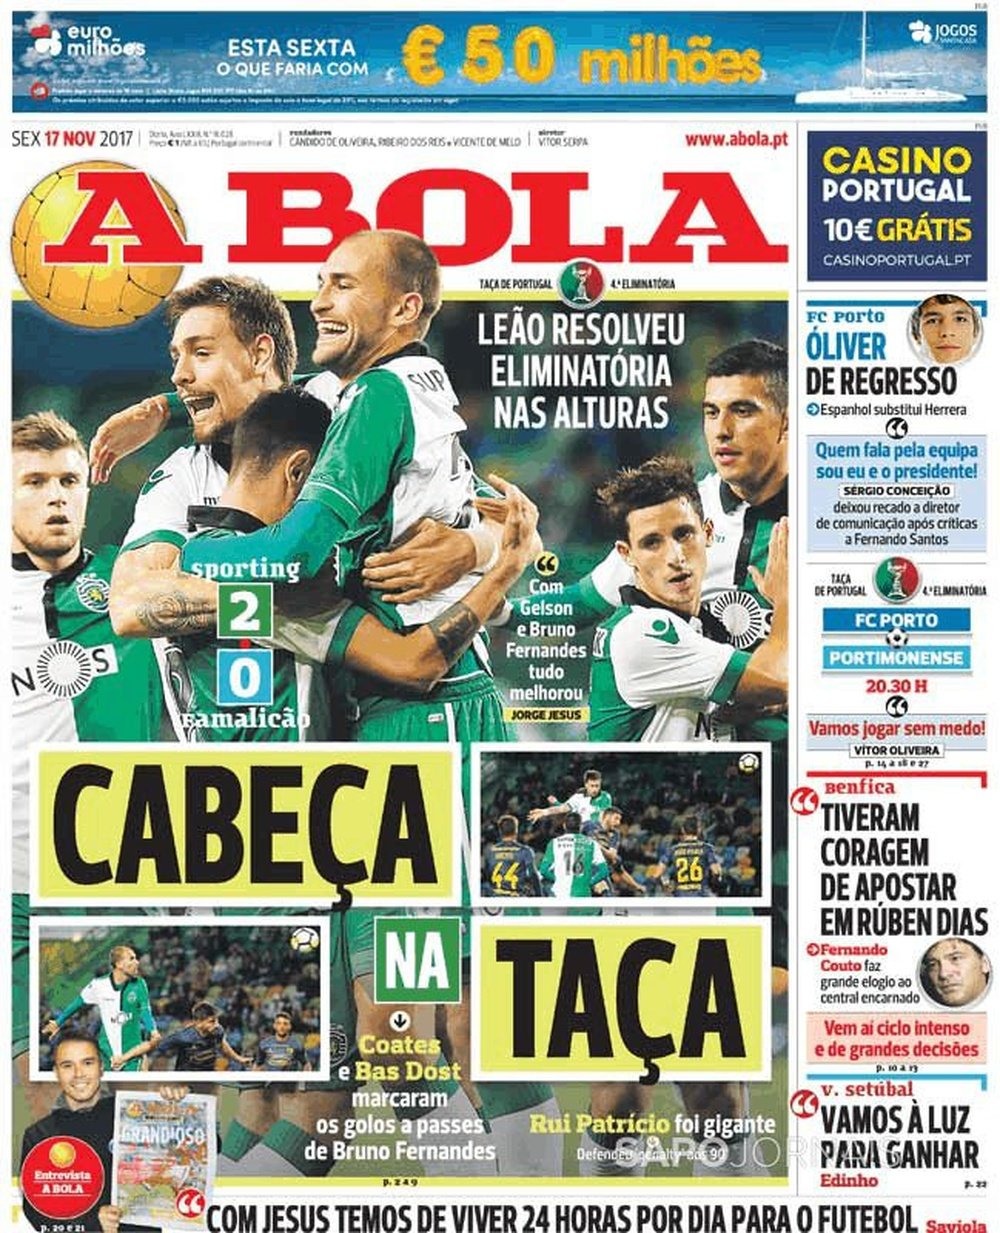 Capa do jornal 'A Bola', 17/11/2017. A Bola